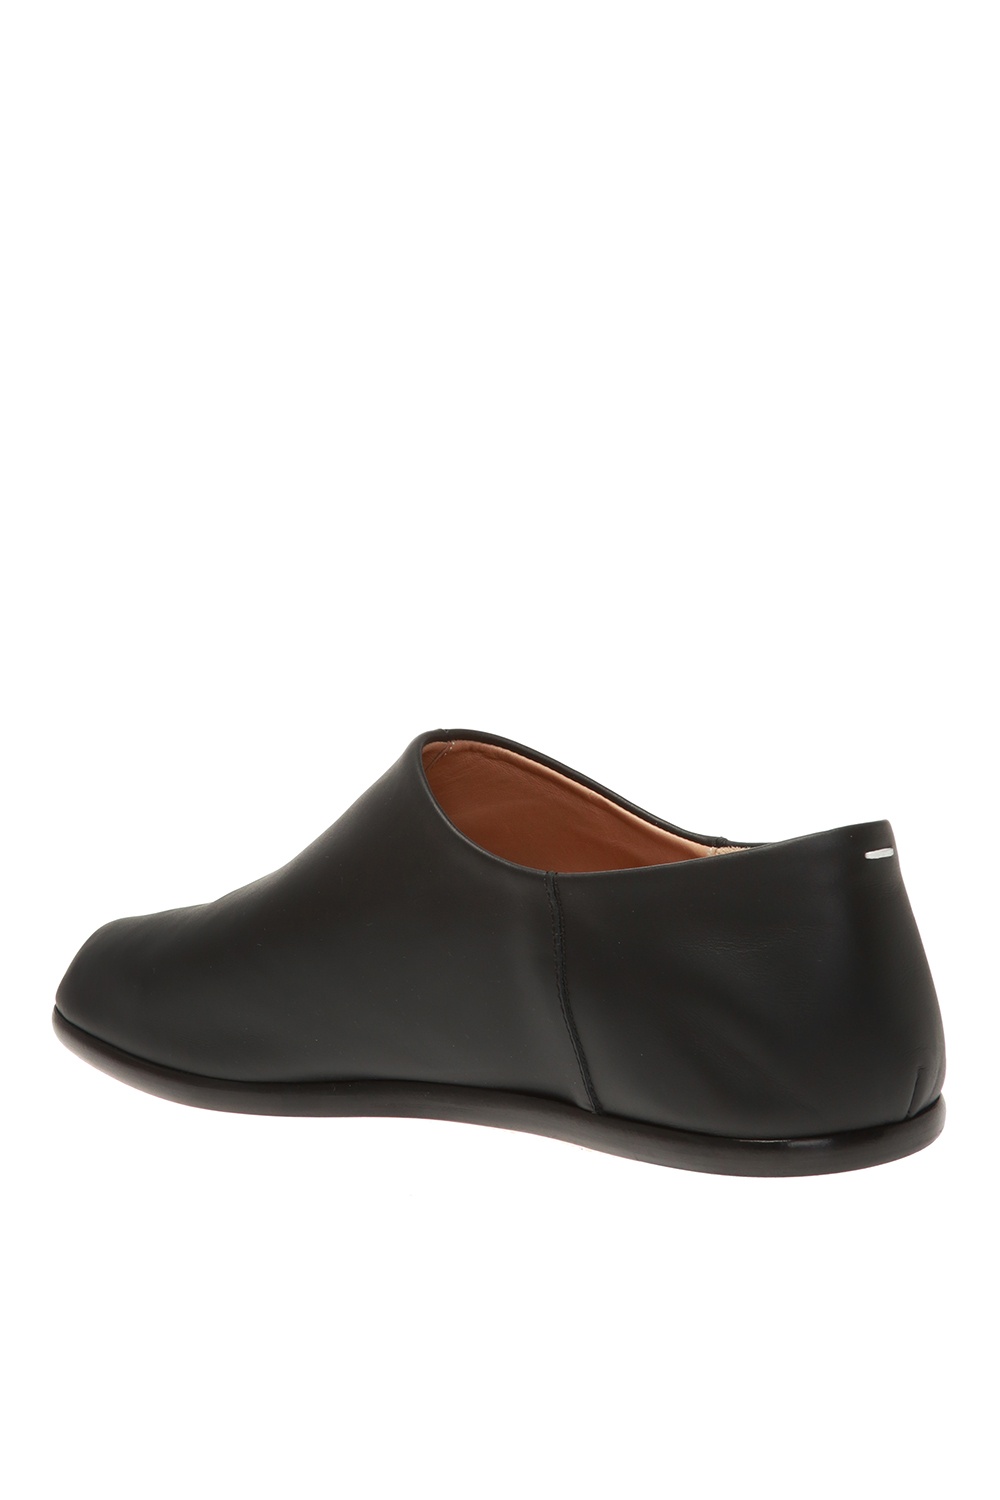 Maison Margiela Leather split toe 'Tabi' shoes | Men's Shoes 